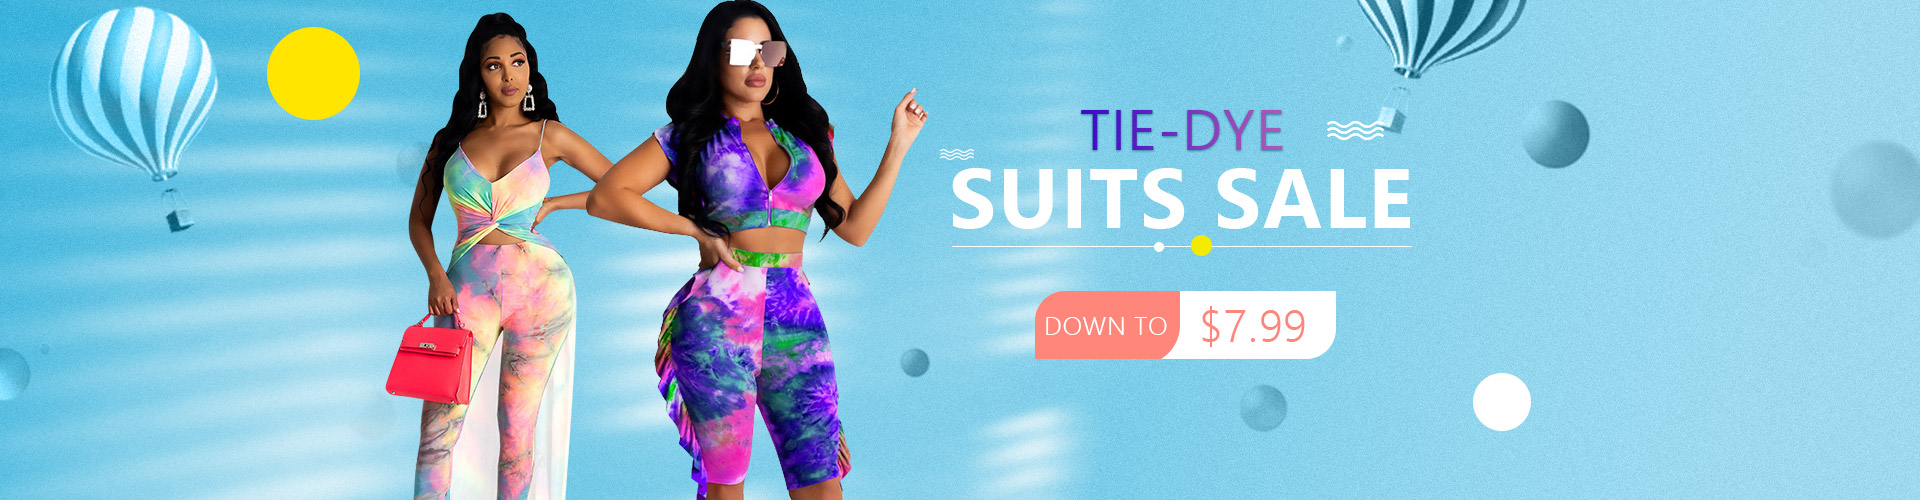 Tie-Dye Suits Sale